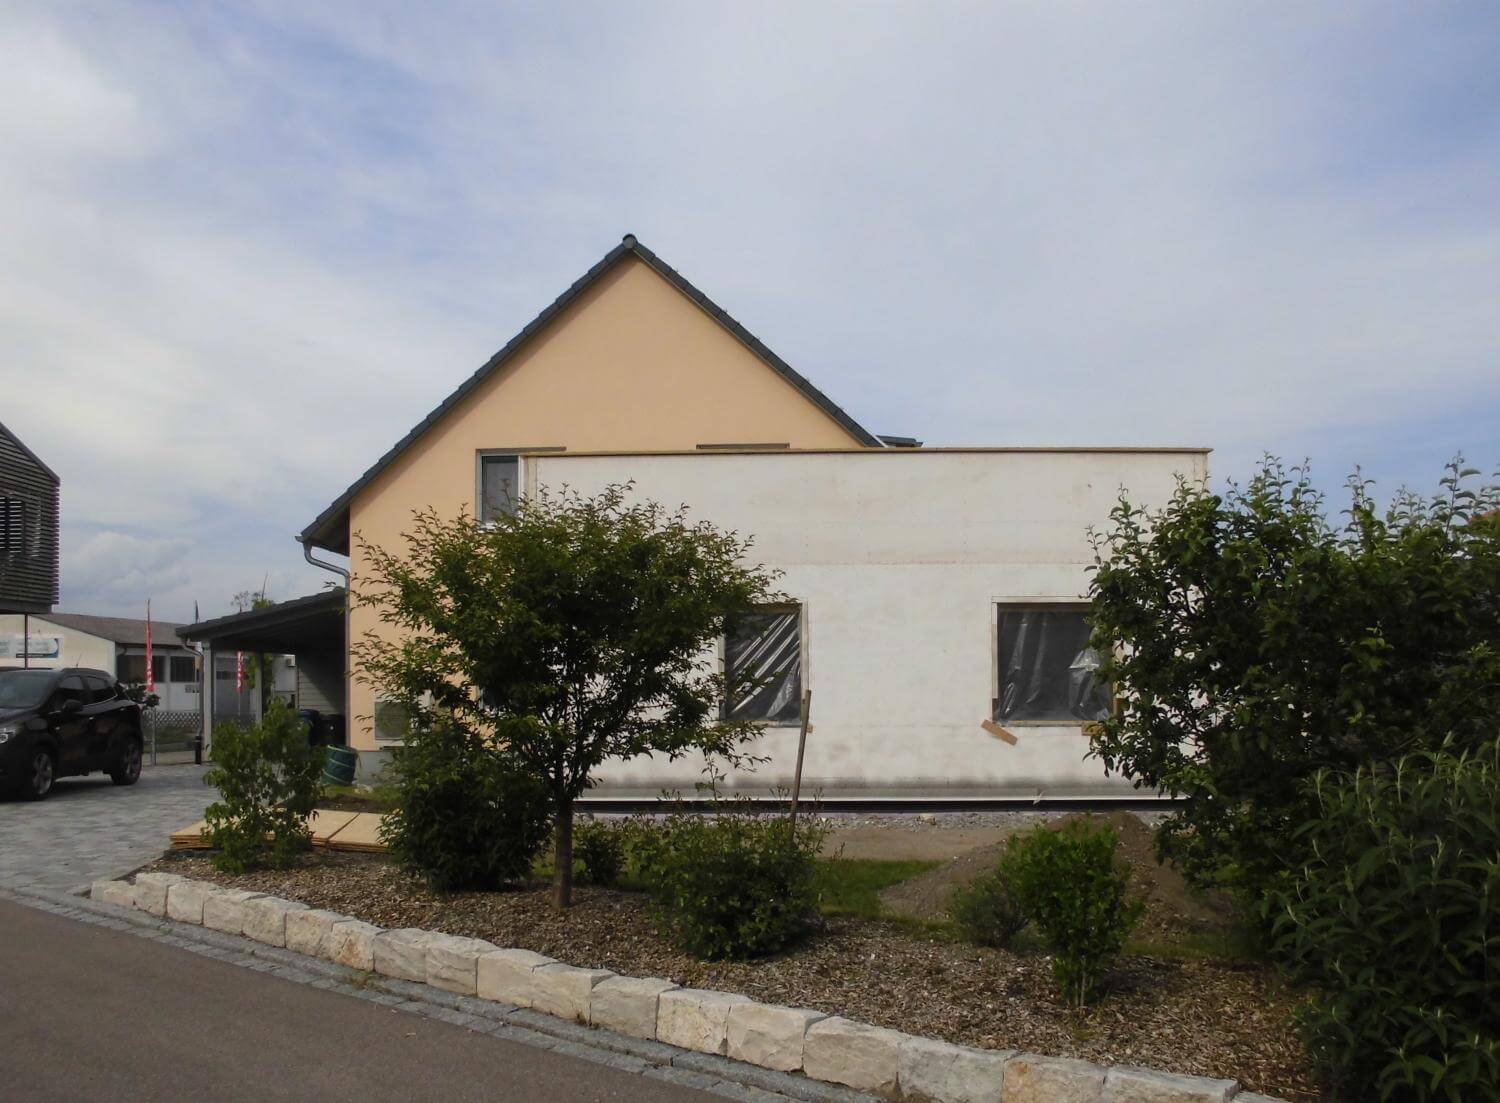 Anbau an ein bestehendes Einfamilienhaus in Bad Windsheim